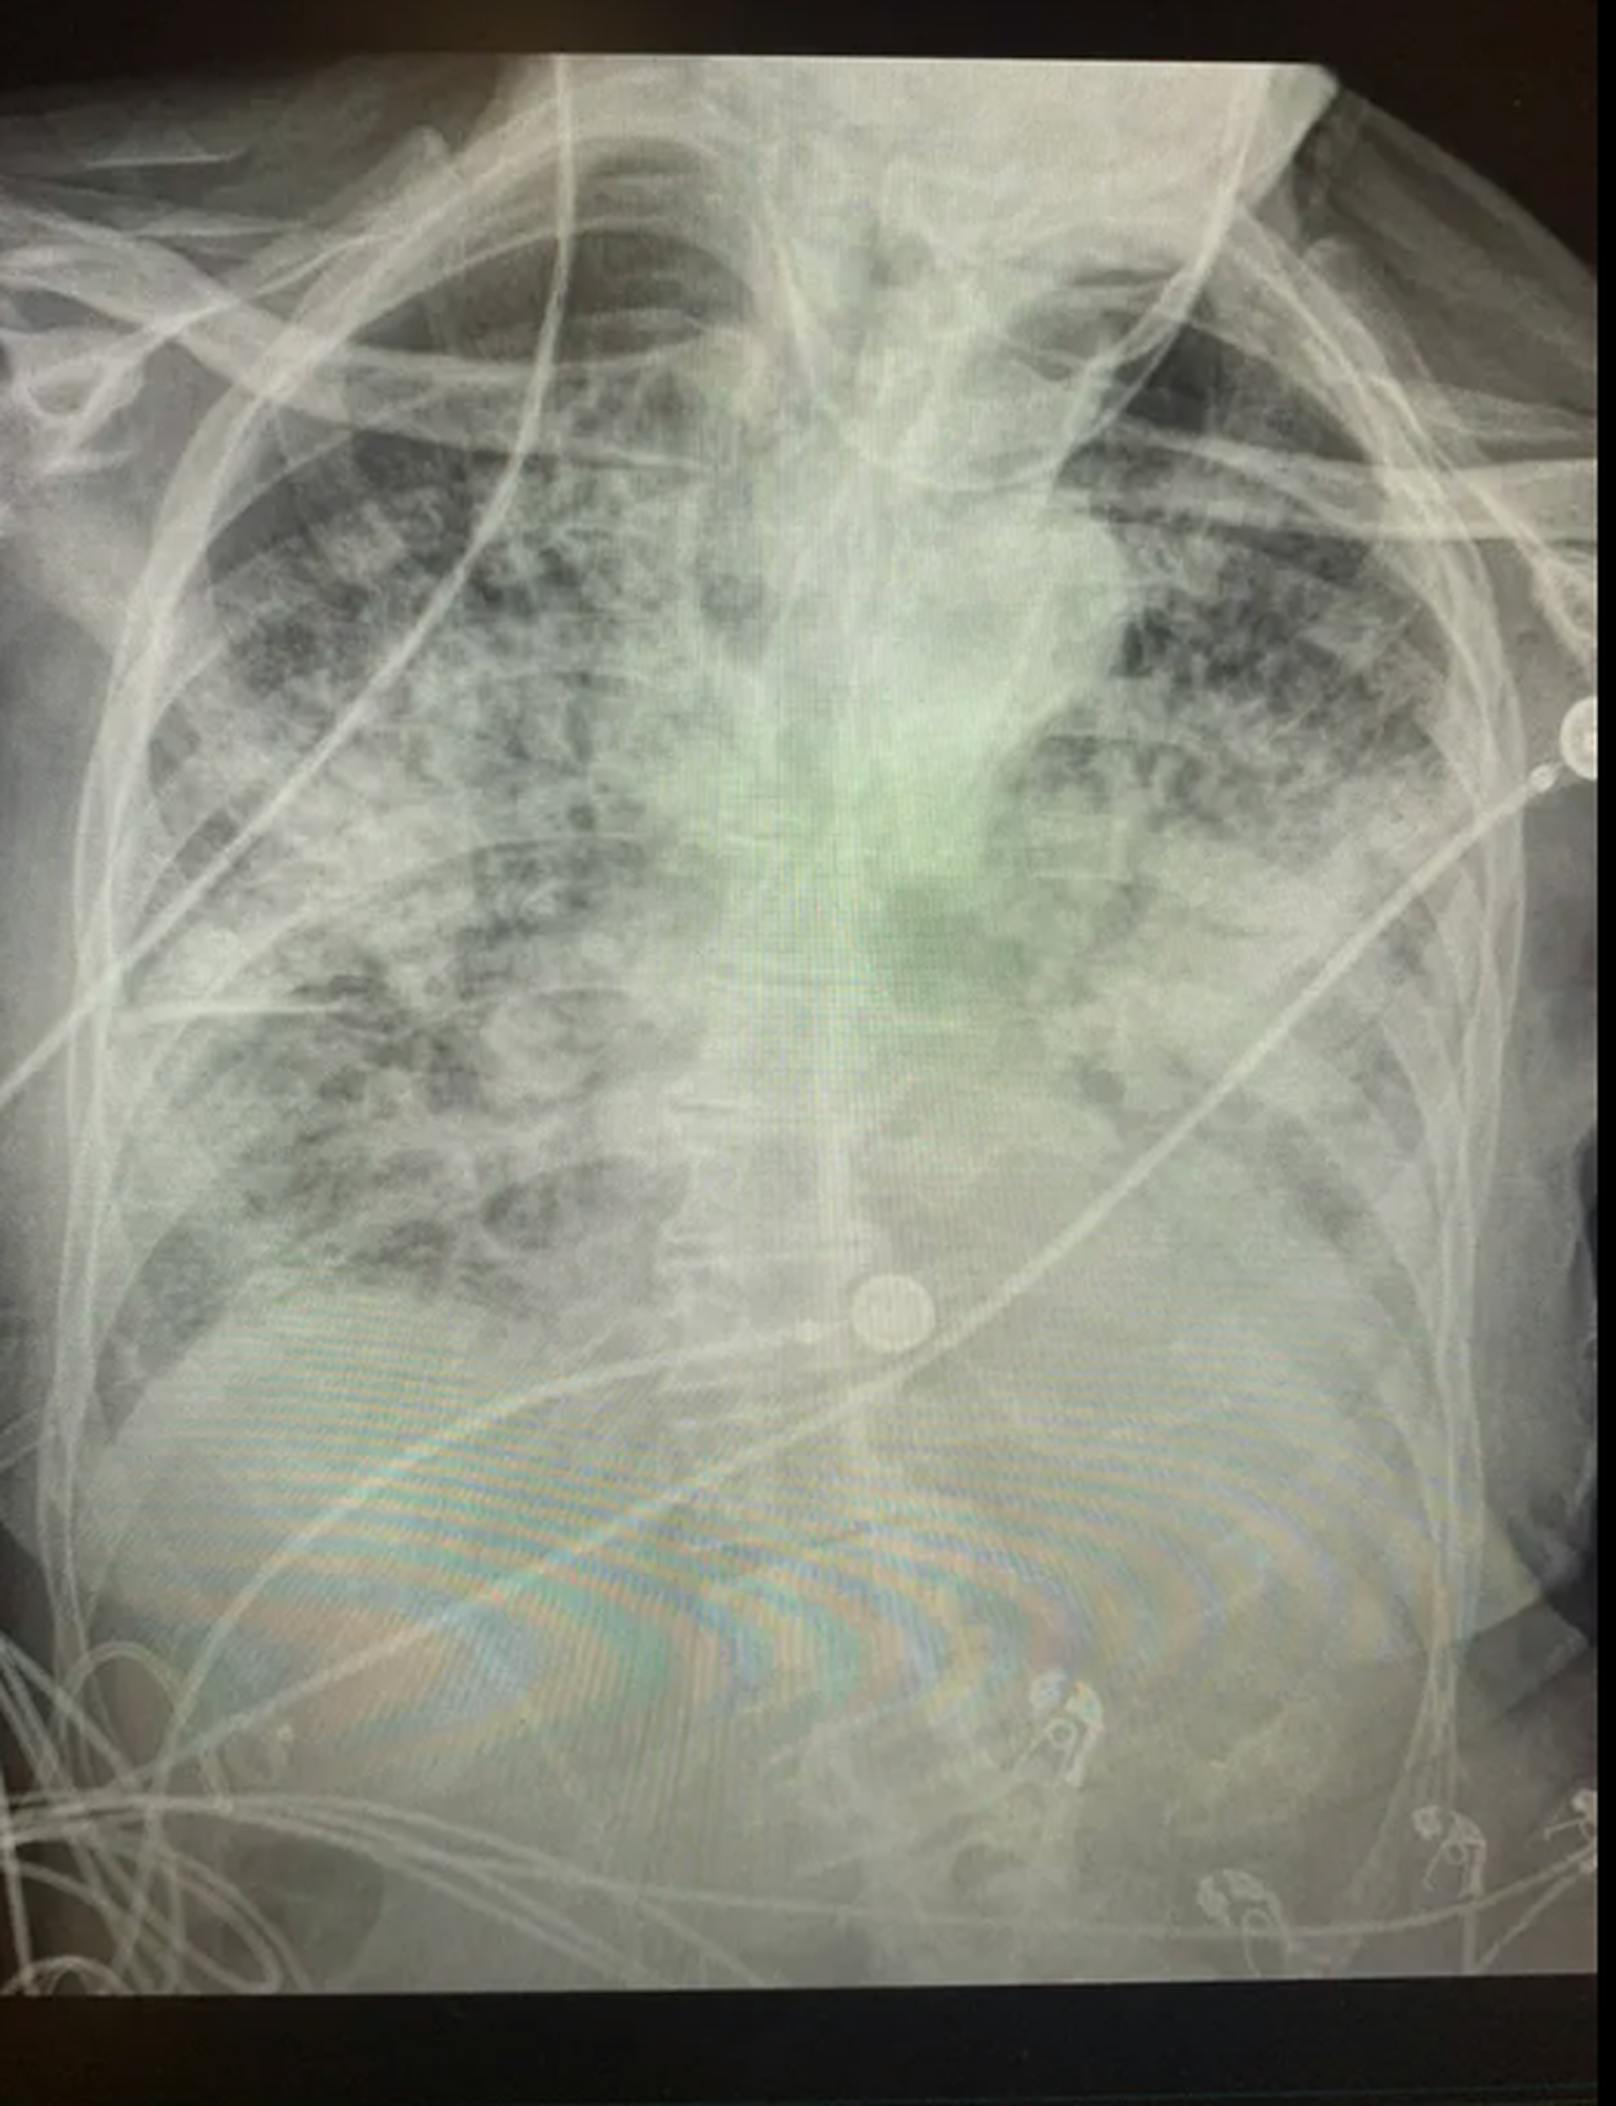 So sieht eine Lunge nach einer schweren Covid-Erkrankung aus.